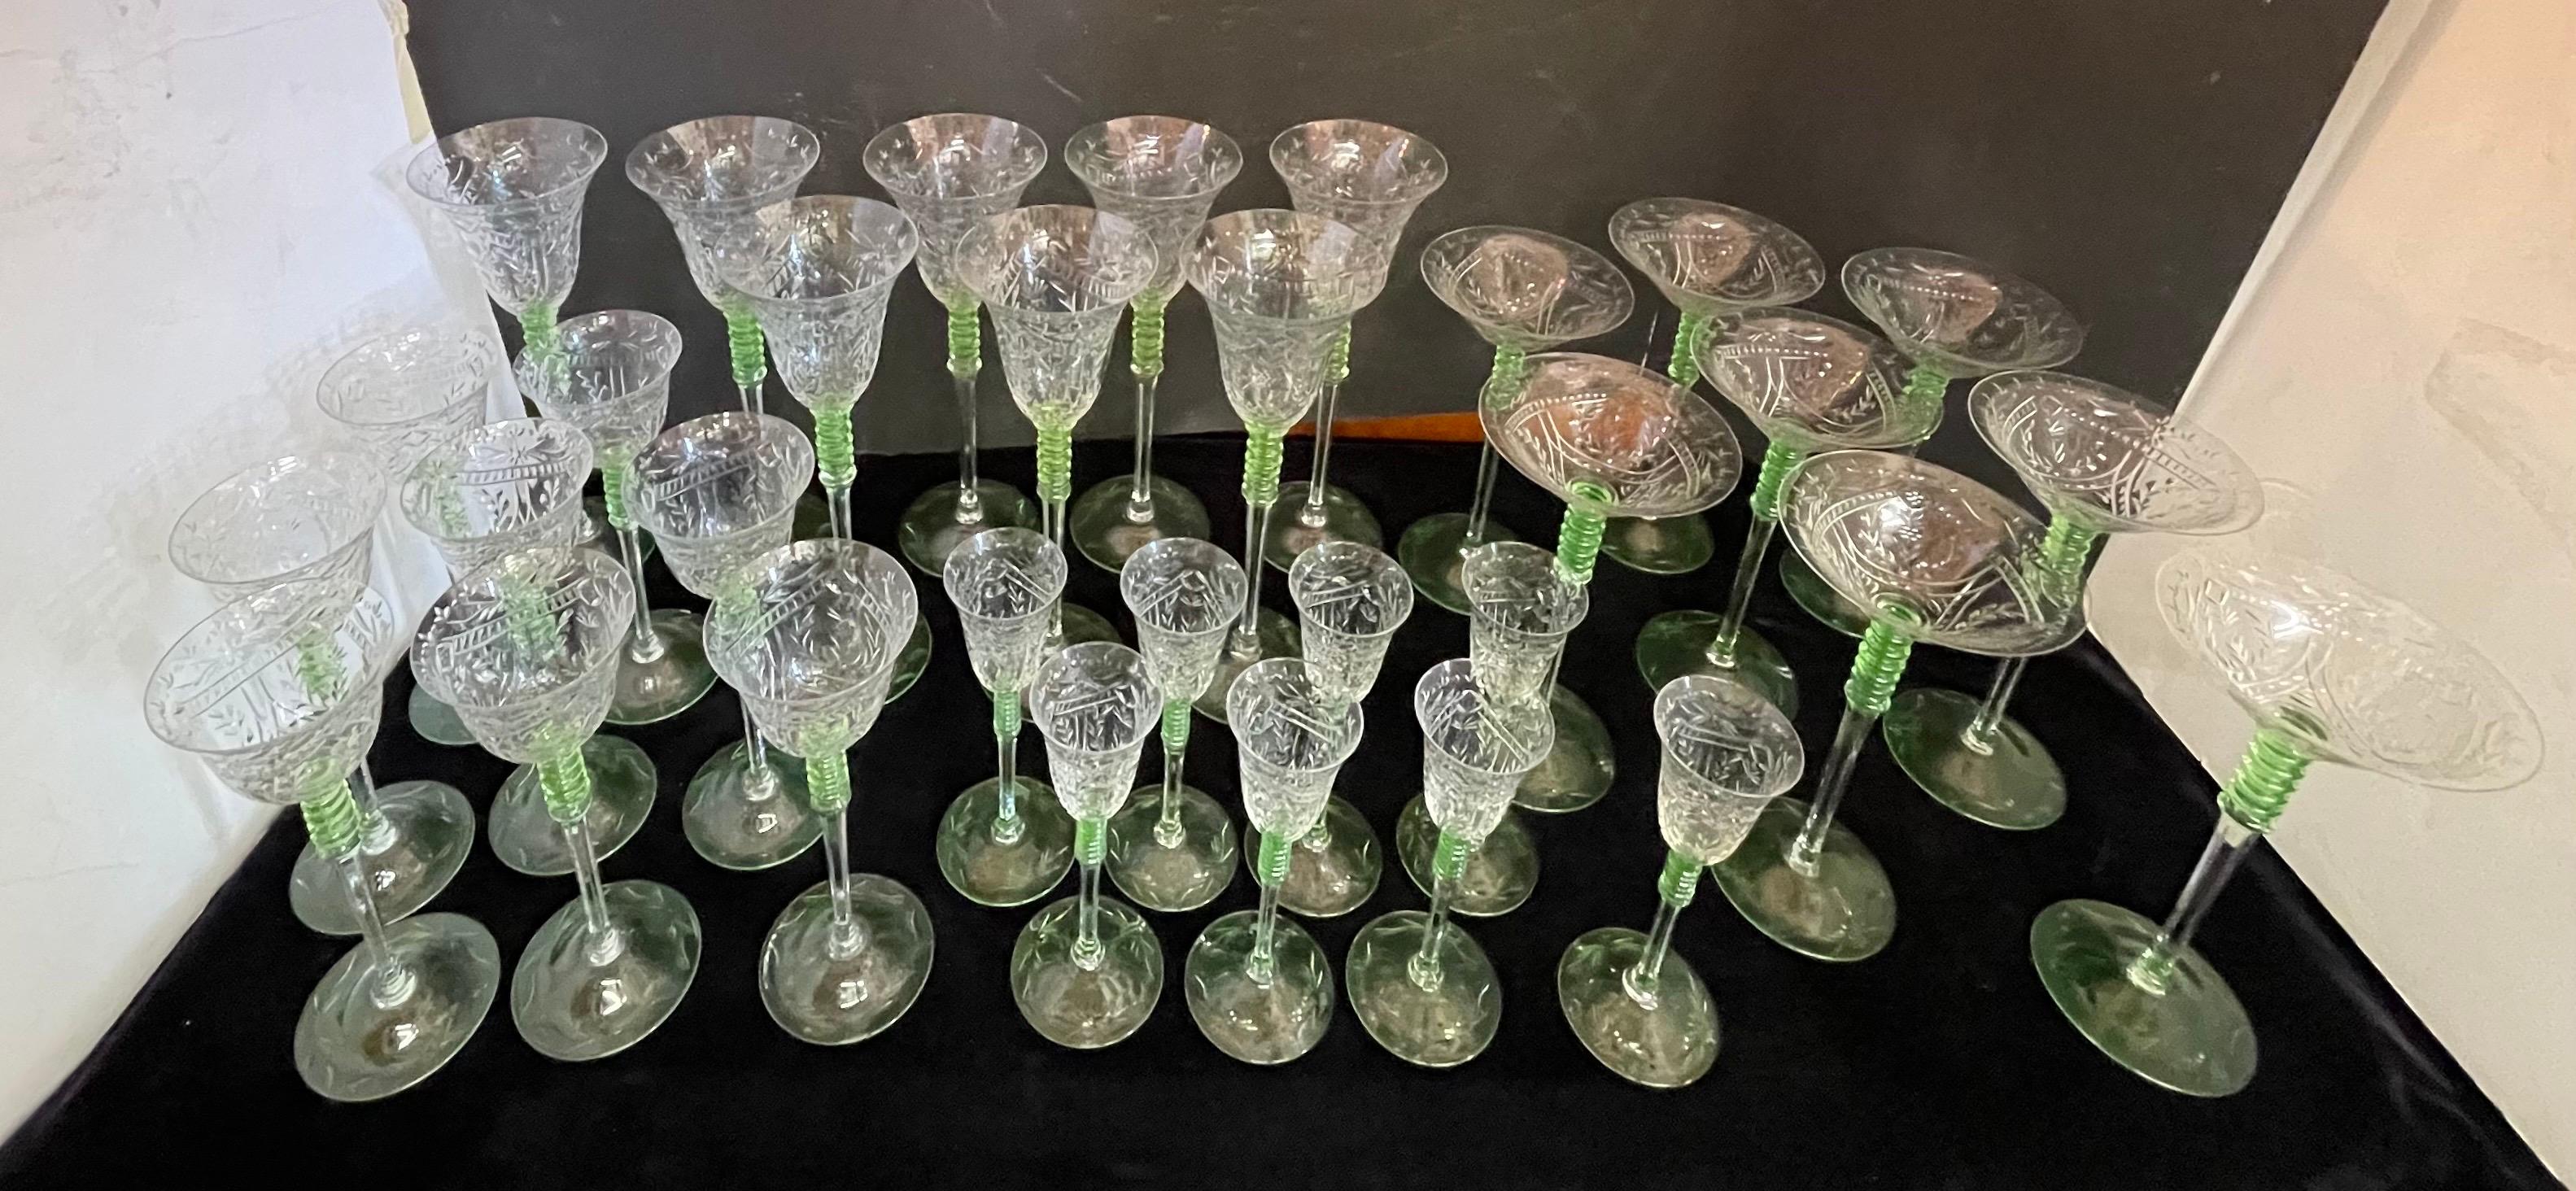 Eine wunderbare Service von 32 böhmischen grün getönten geätzten geschliffenen Kristall Bar Gläser Stemware 
Bestehend aus 8 Stücken pro Platzset in 4 verschiedenen Größen...
Derzeit auf Southey's für mehr als das Doppelte des Preises.